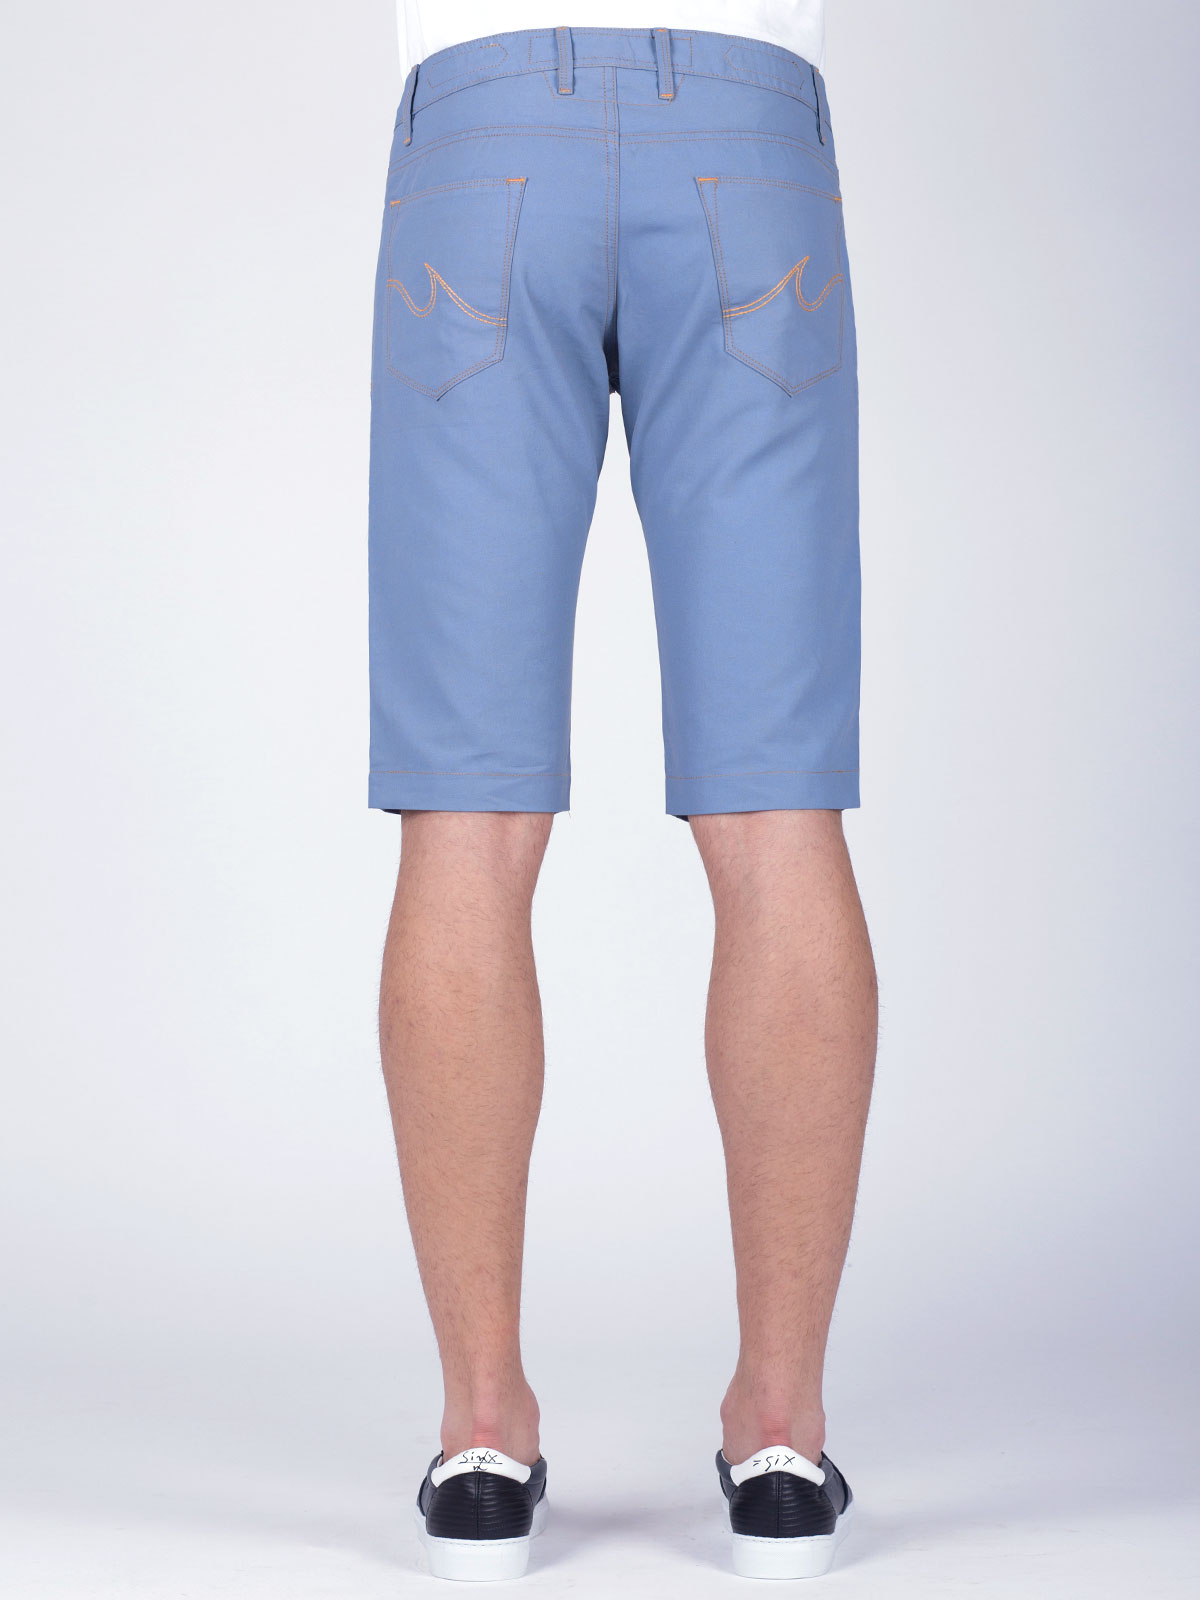 Κοντό παντελόνι σε γαλάζιο - 67003 € 11.25 img3